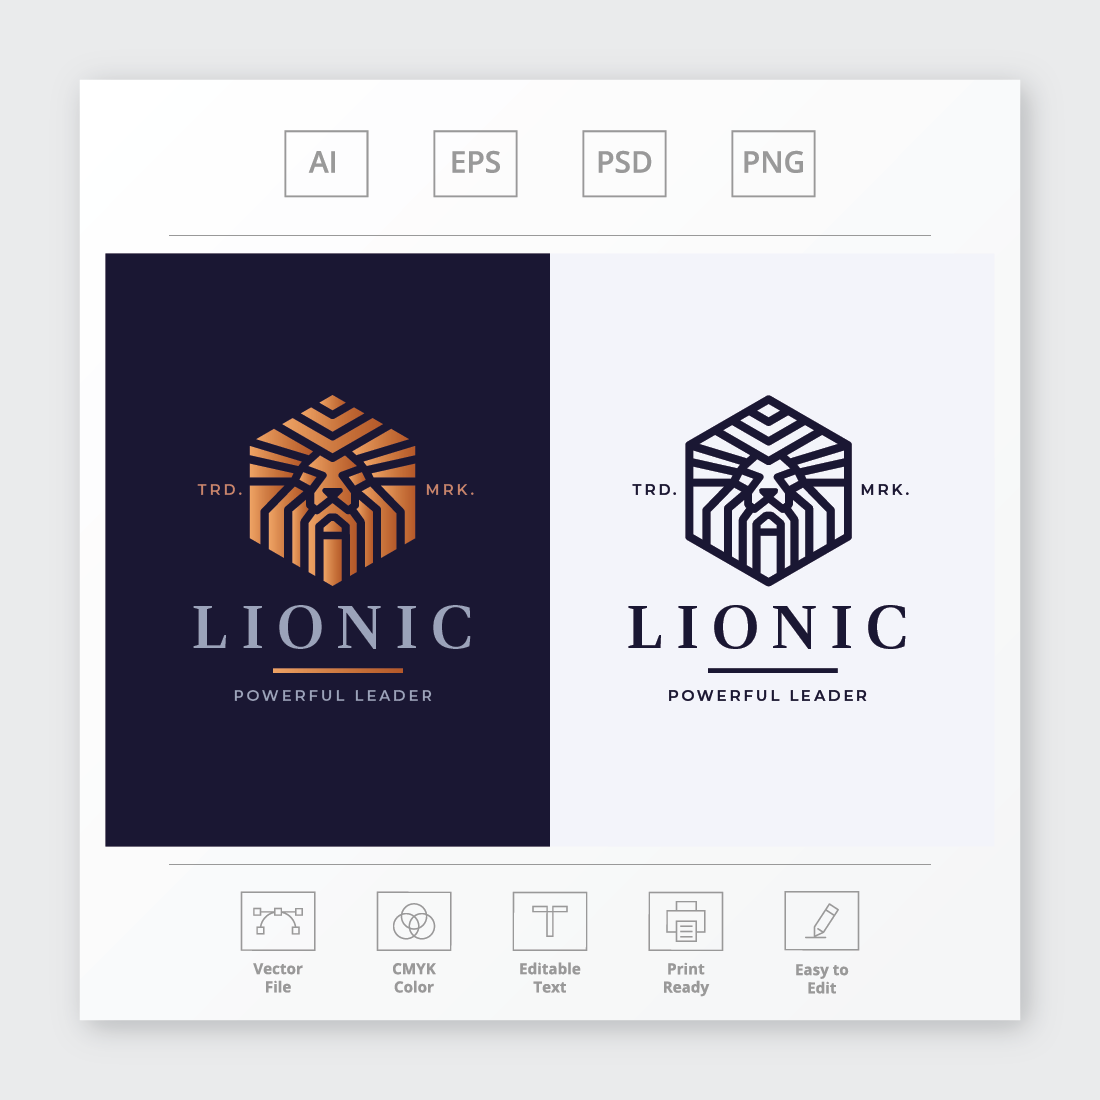 Lionic Lion Head Logo cover image.